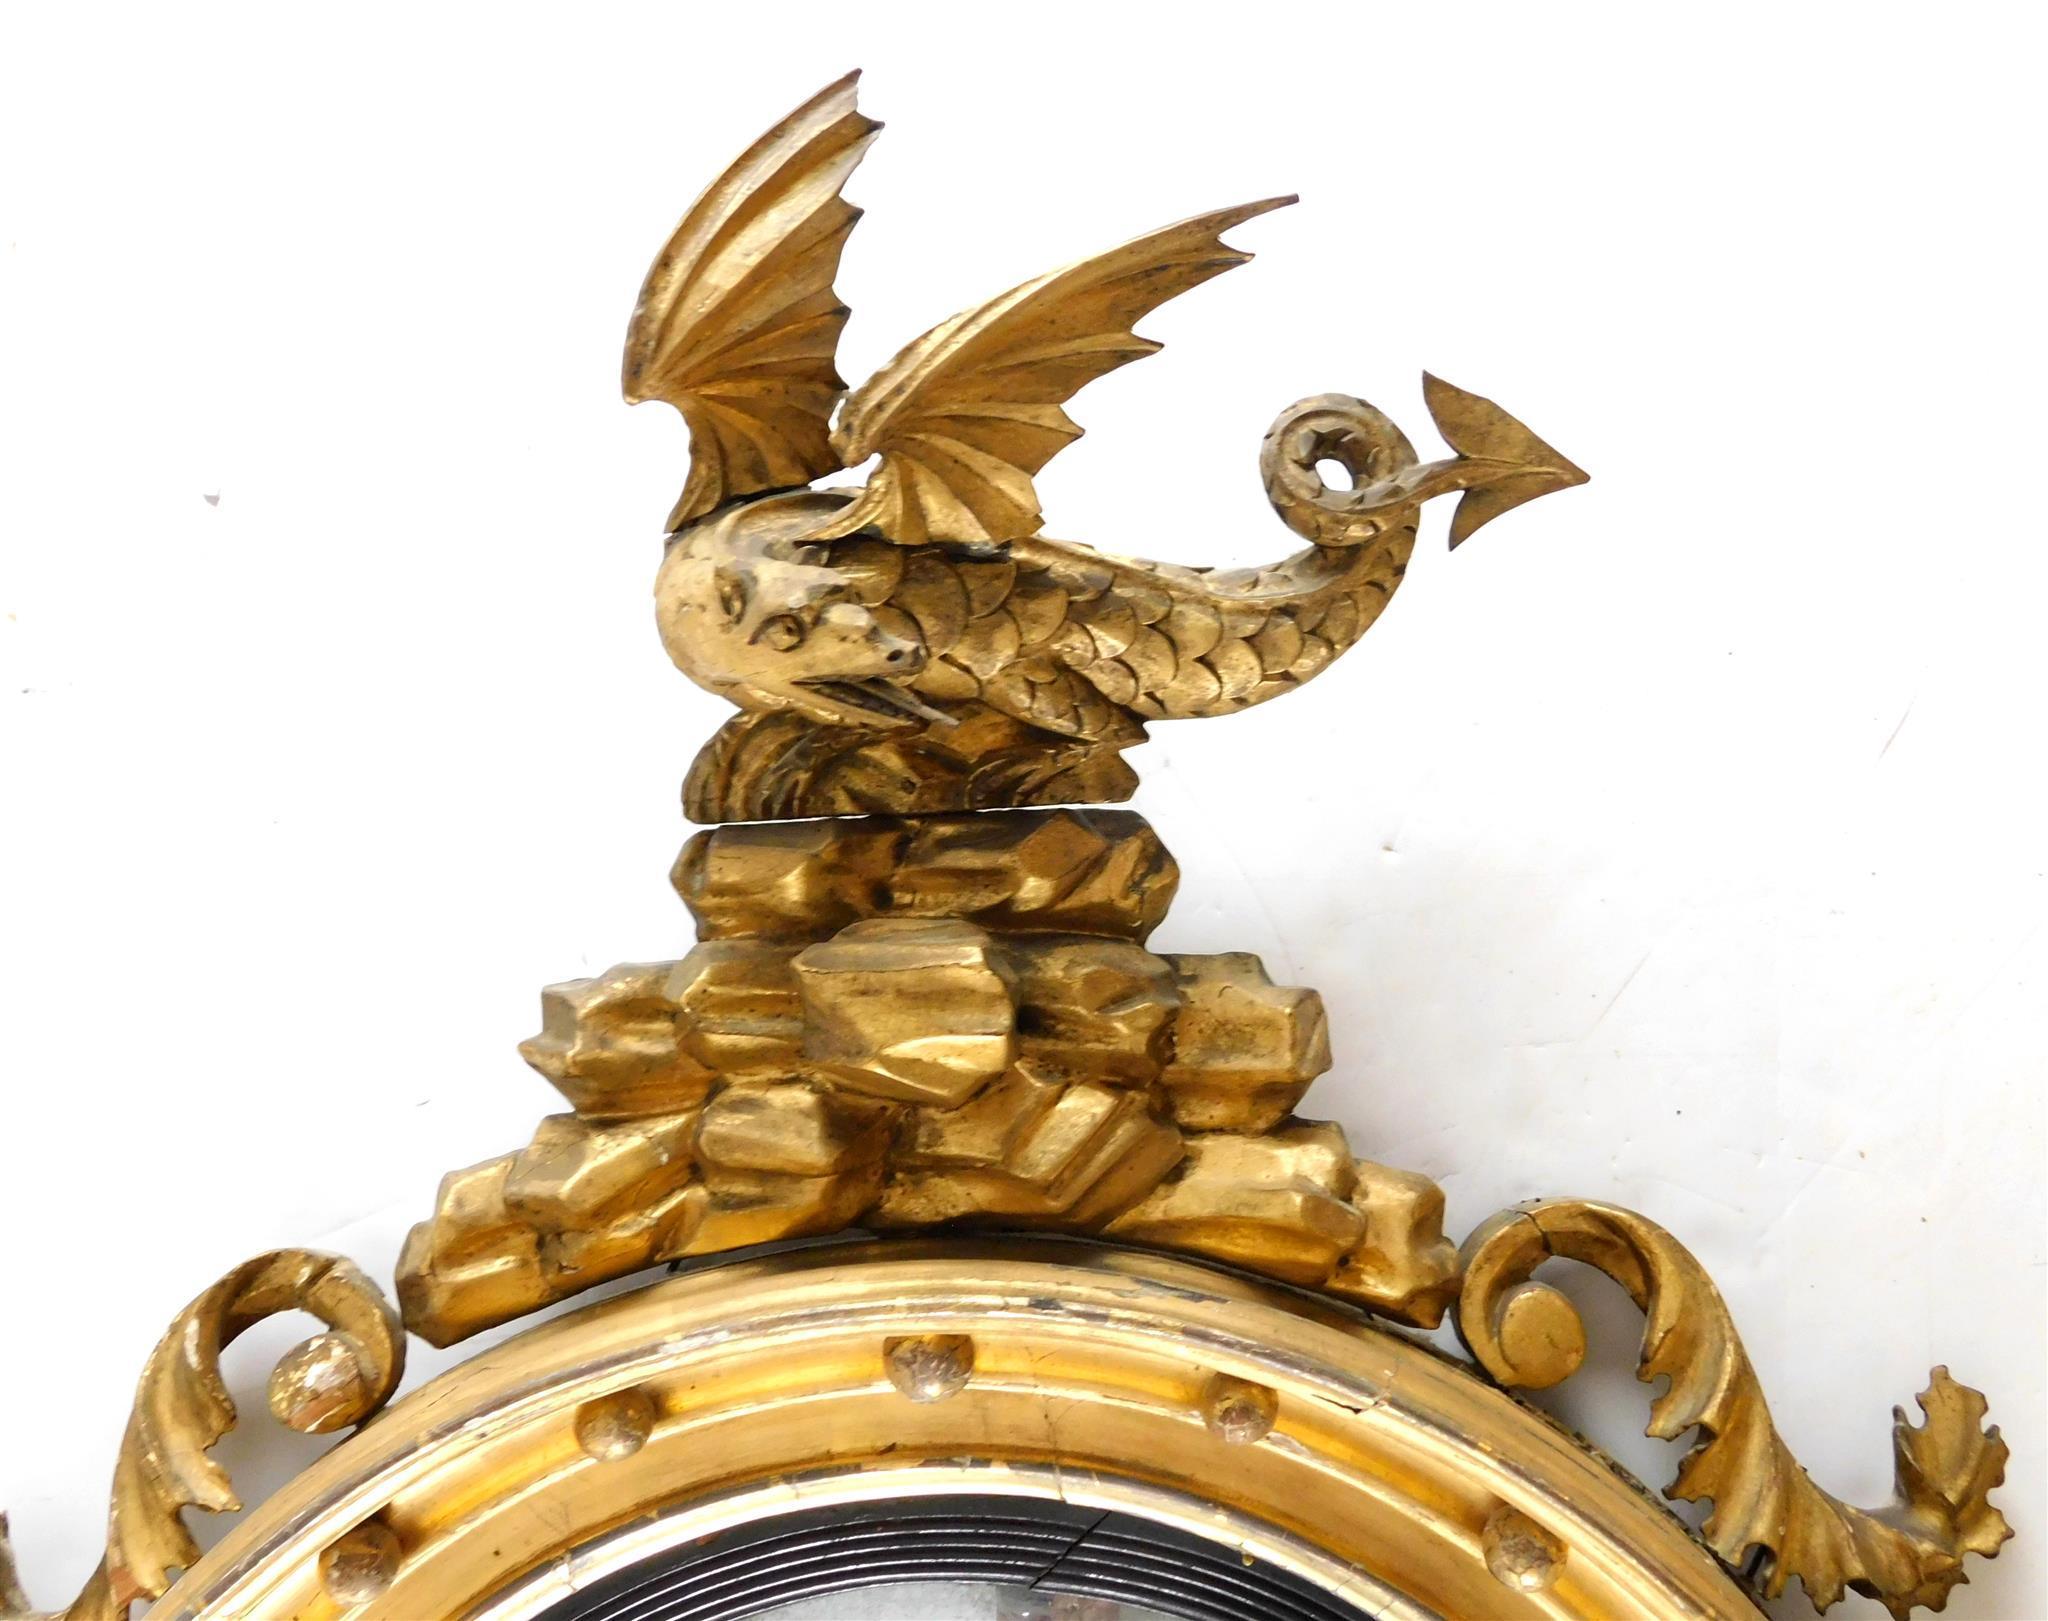 Antiker englischer Regency-Spiegel aus geschnitztem Goldholz, um 1820 datiert.
Der konvexe Spiegel ist von einem ebonisierten, eleganten, geriffelten Rahmen und einem Fries aus vergoldetem Holz mit Kugelhalterungen umgeben. Der geschnitzte obere